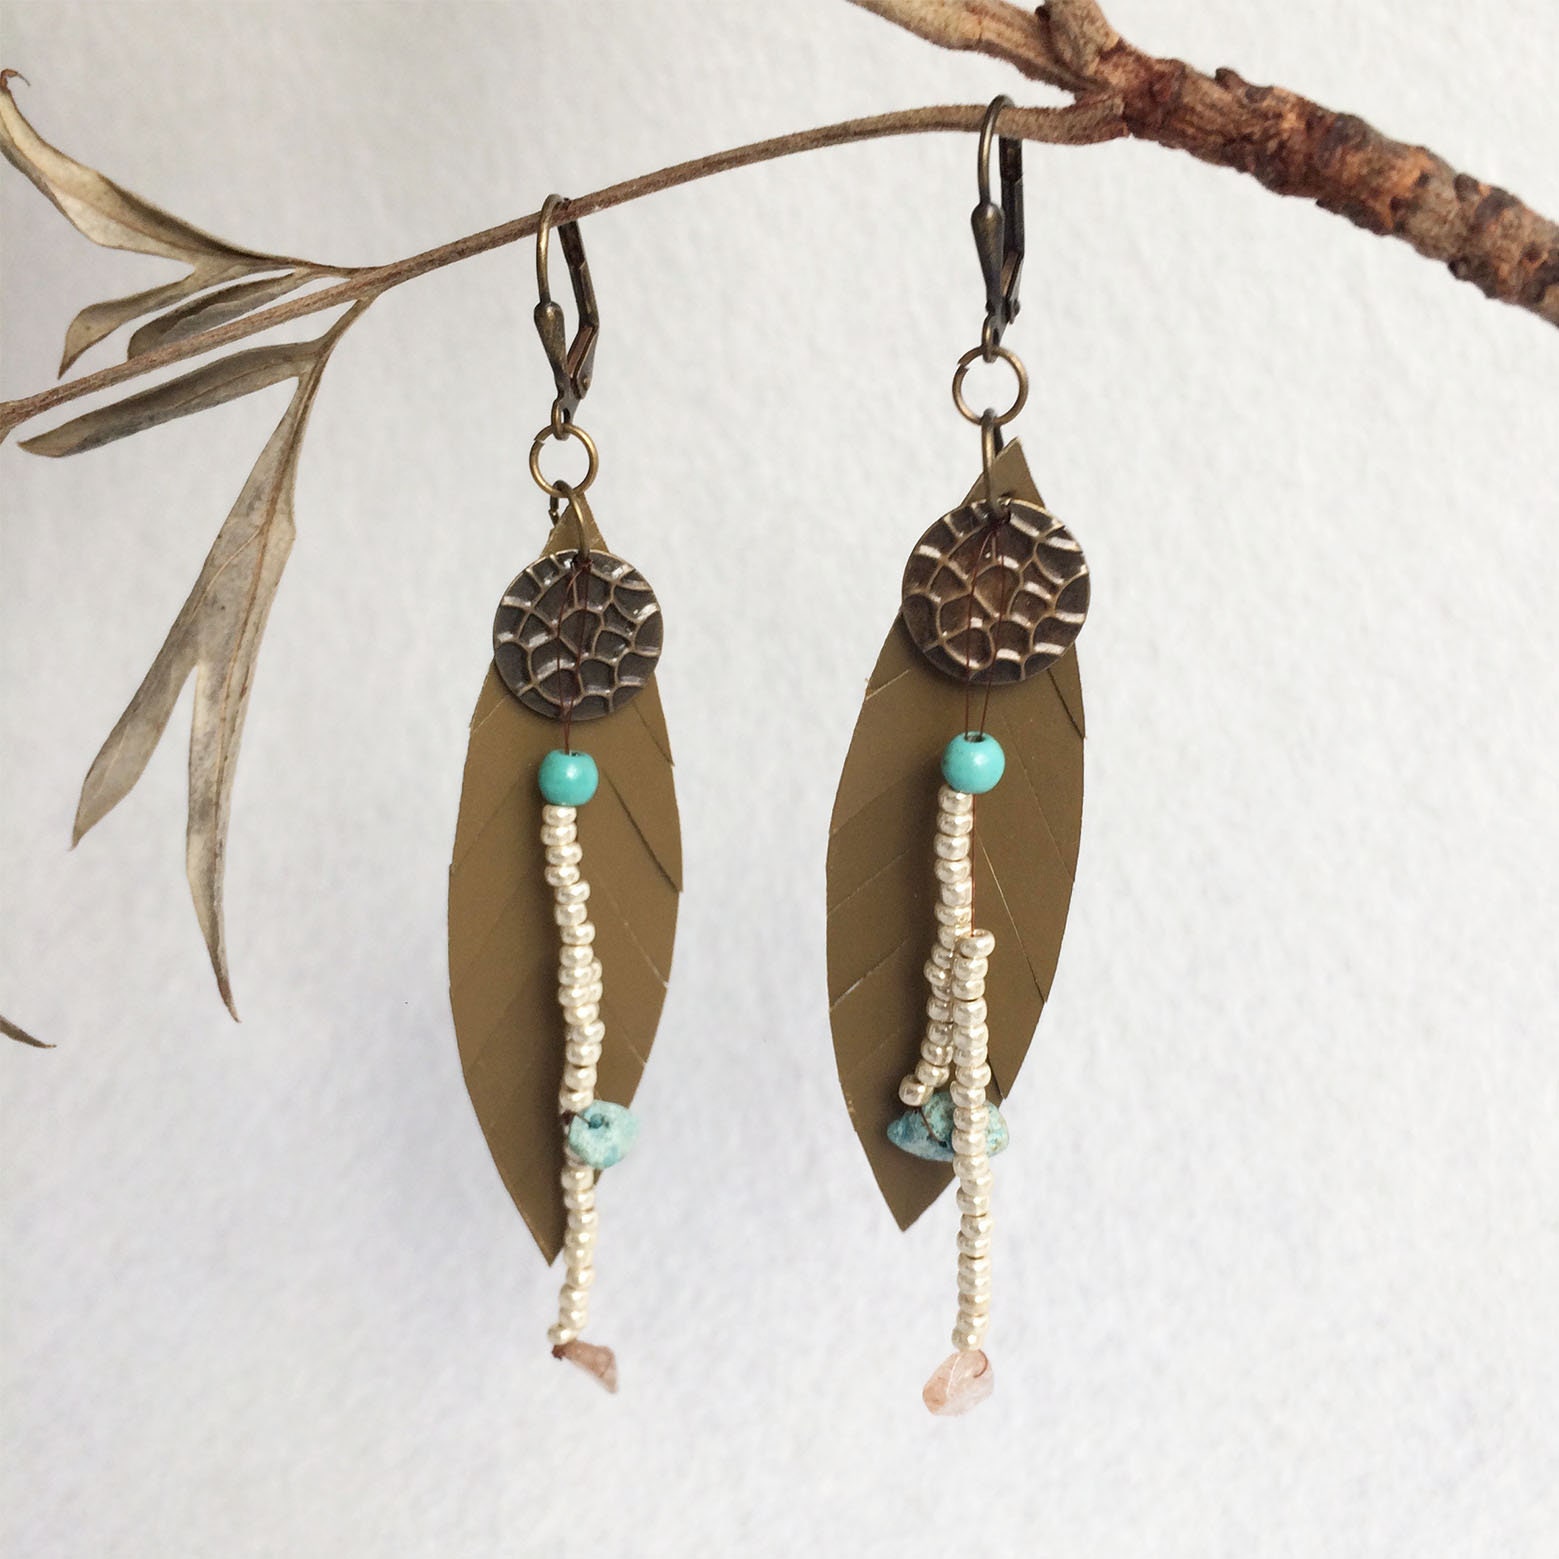 Leather feather earrings - bohemian leaf earrings